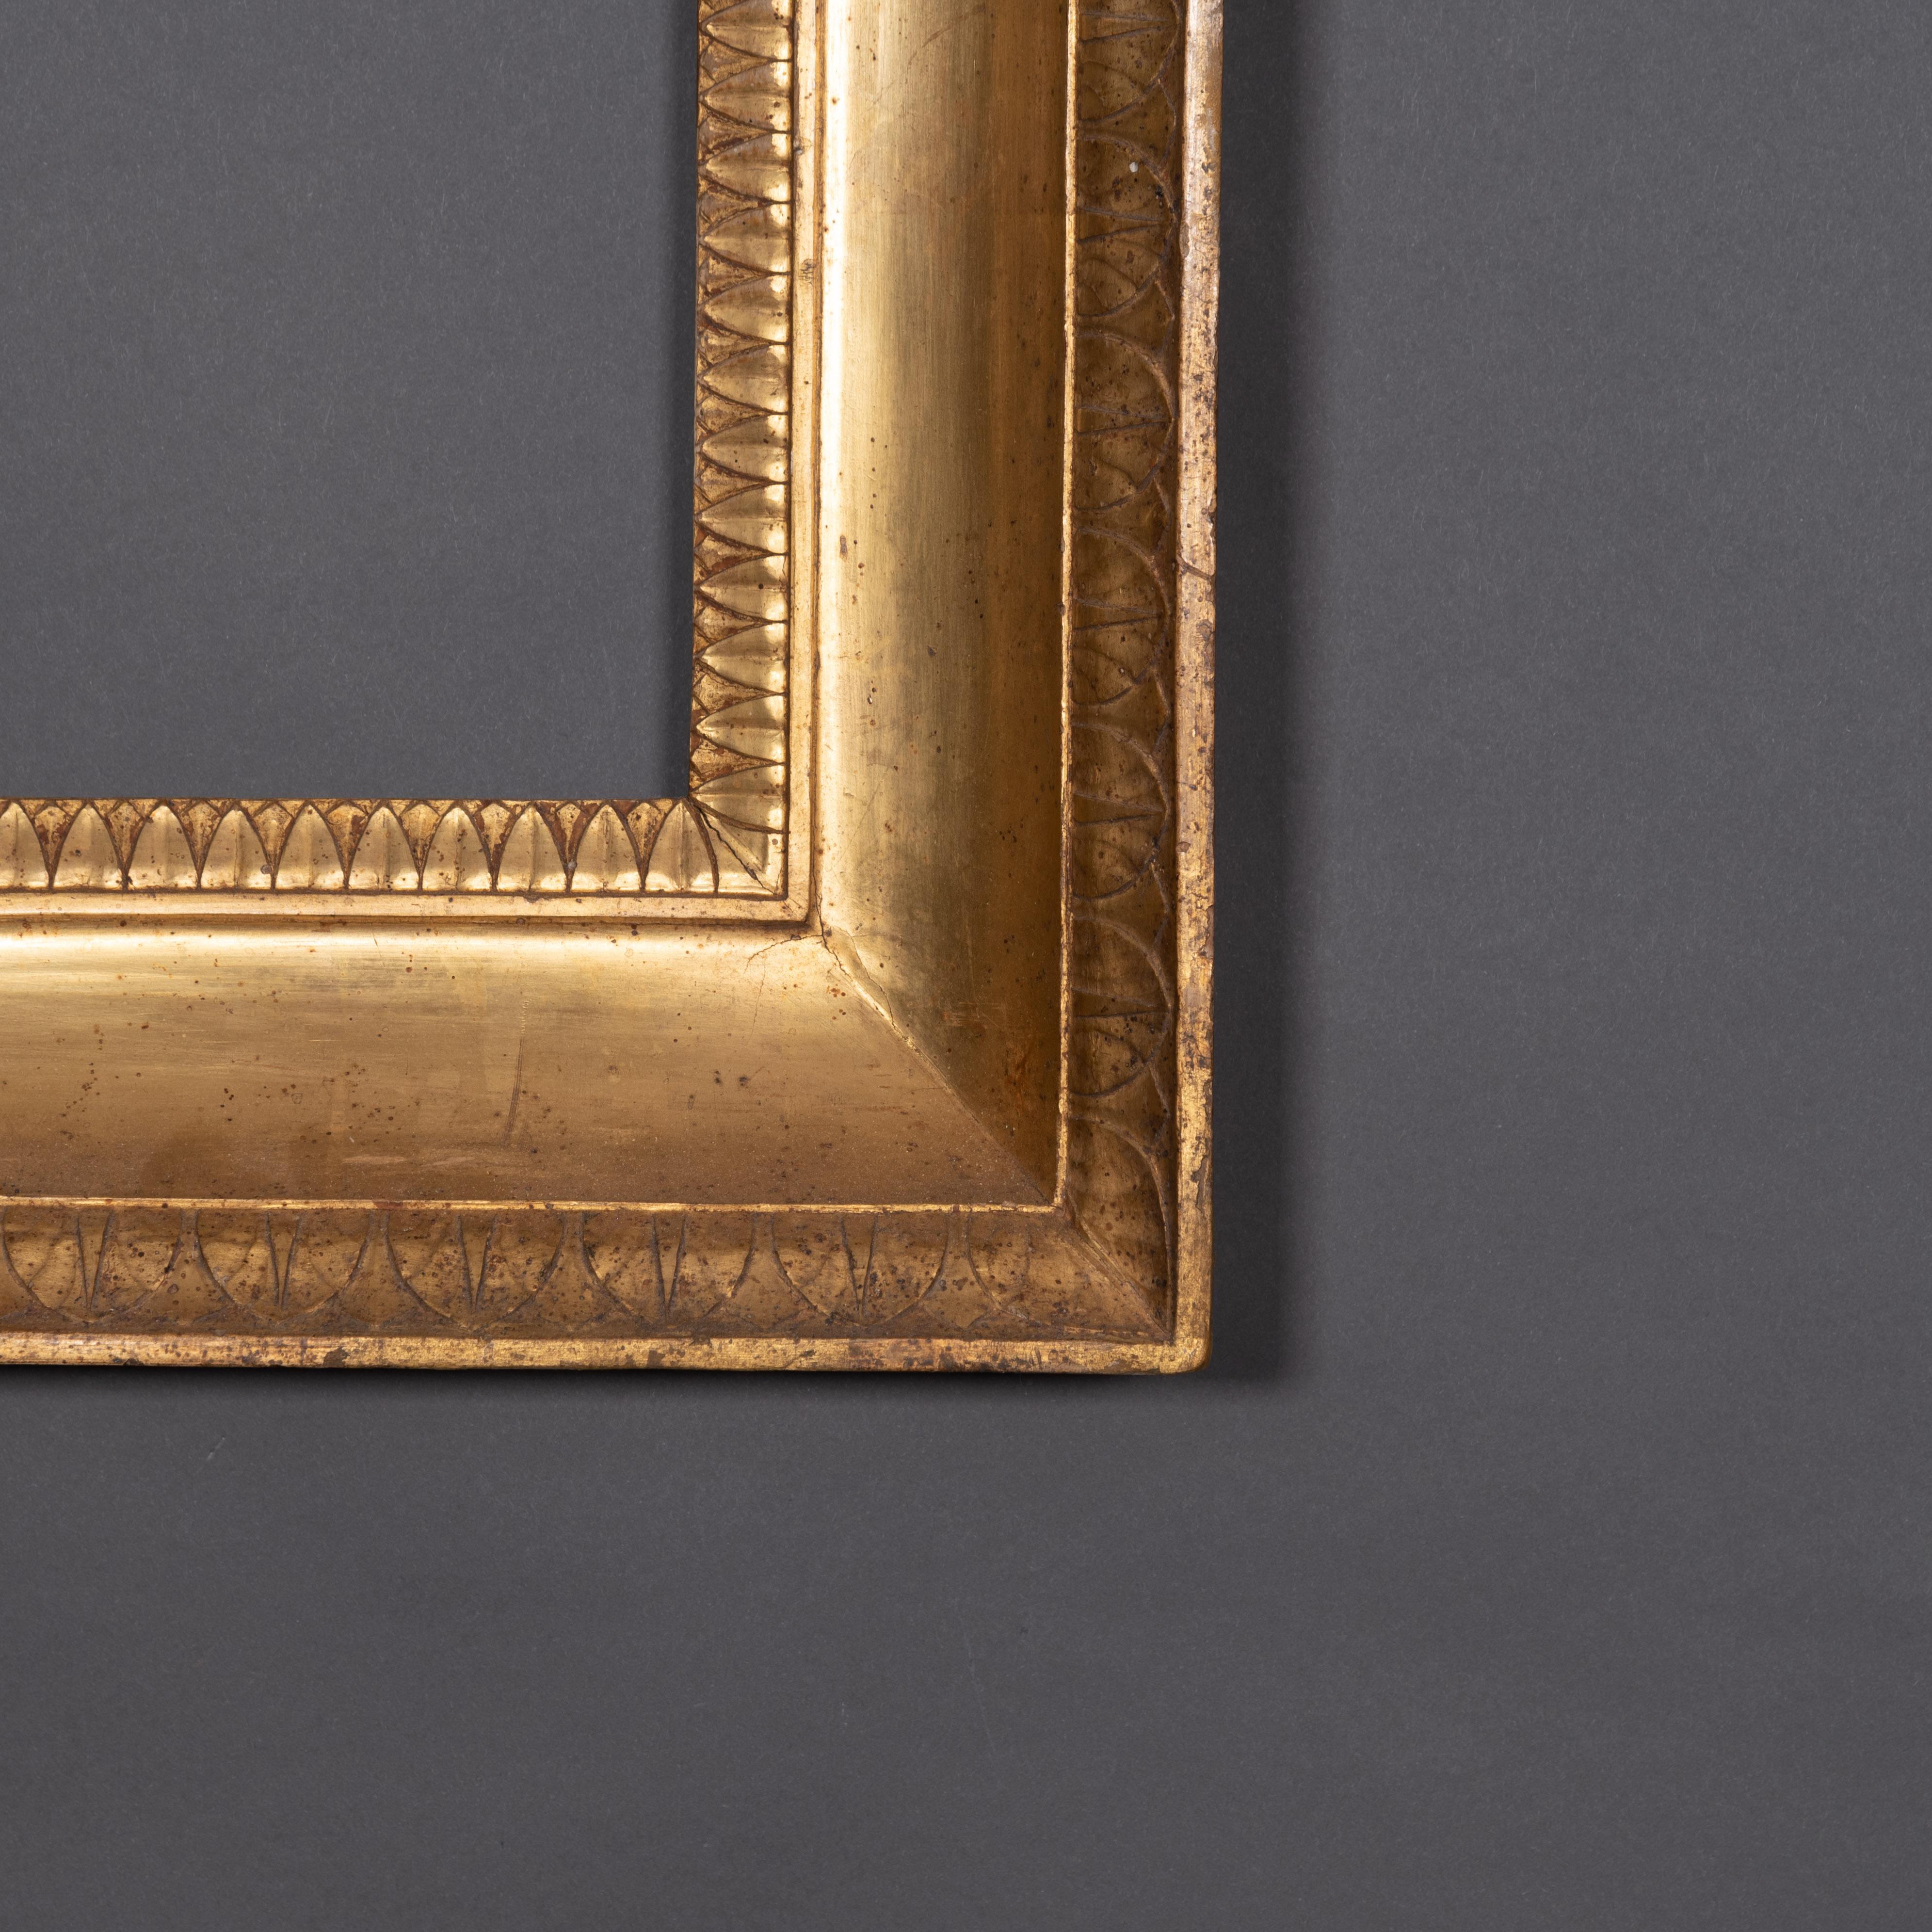 Merveilleux cadre en bois doré d'origine Empire italien avec deux rangées de sculptures
Début du 19e siècle 
Mesures internes cm 58.5 x 47

Chaque article de notre galerie est accompagné, sur demande, d'un certificat d'authenticité délivré par